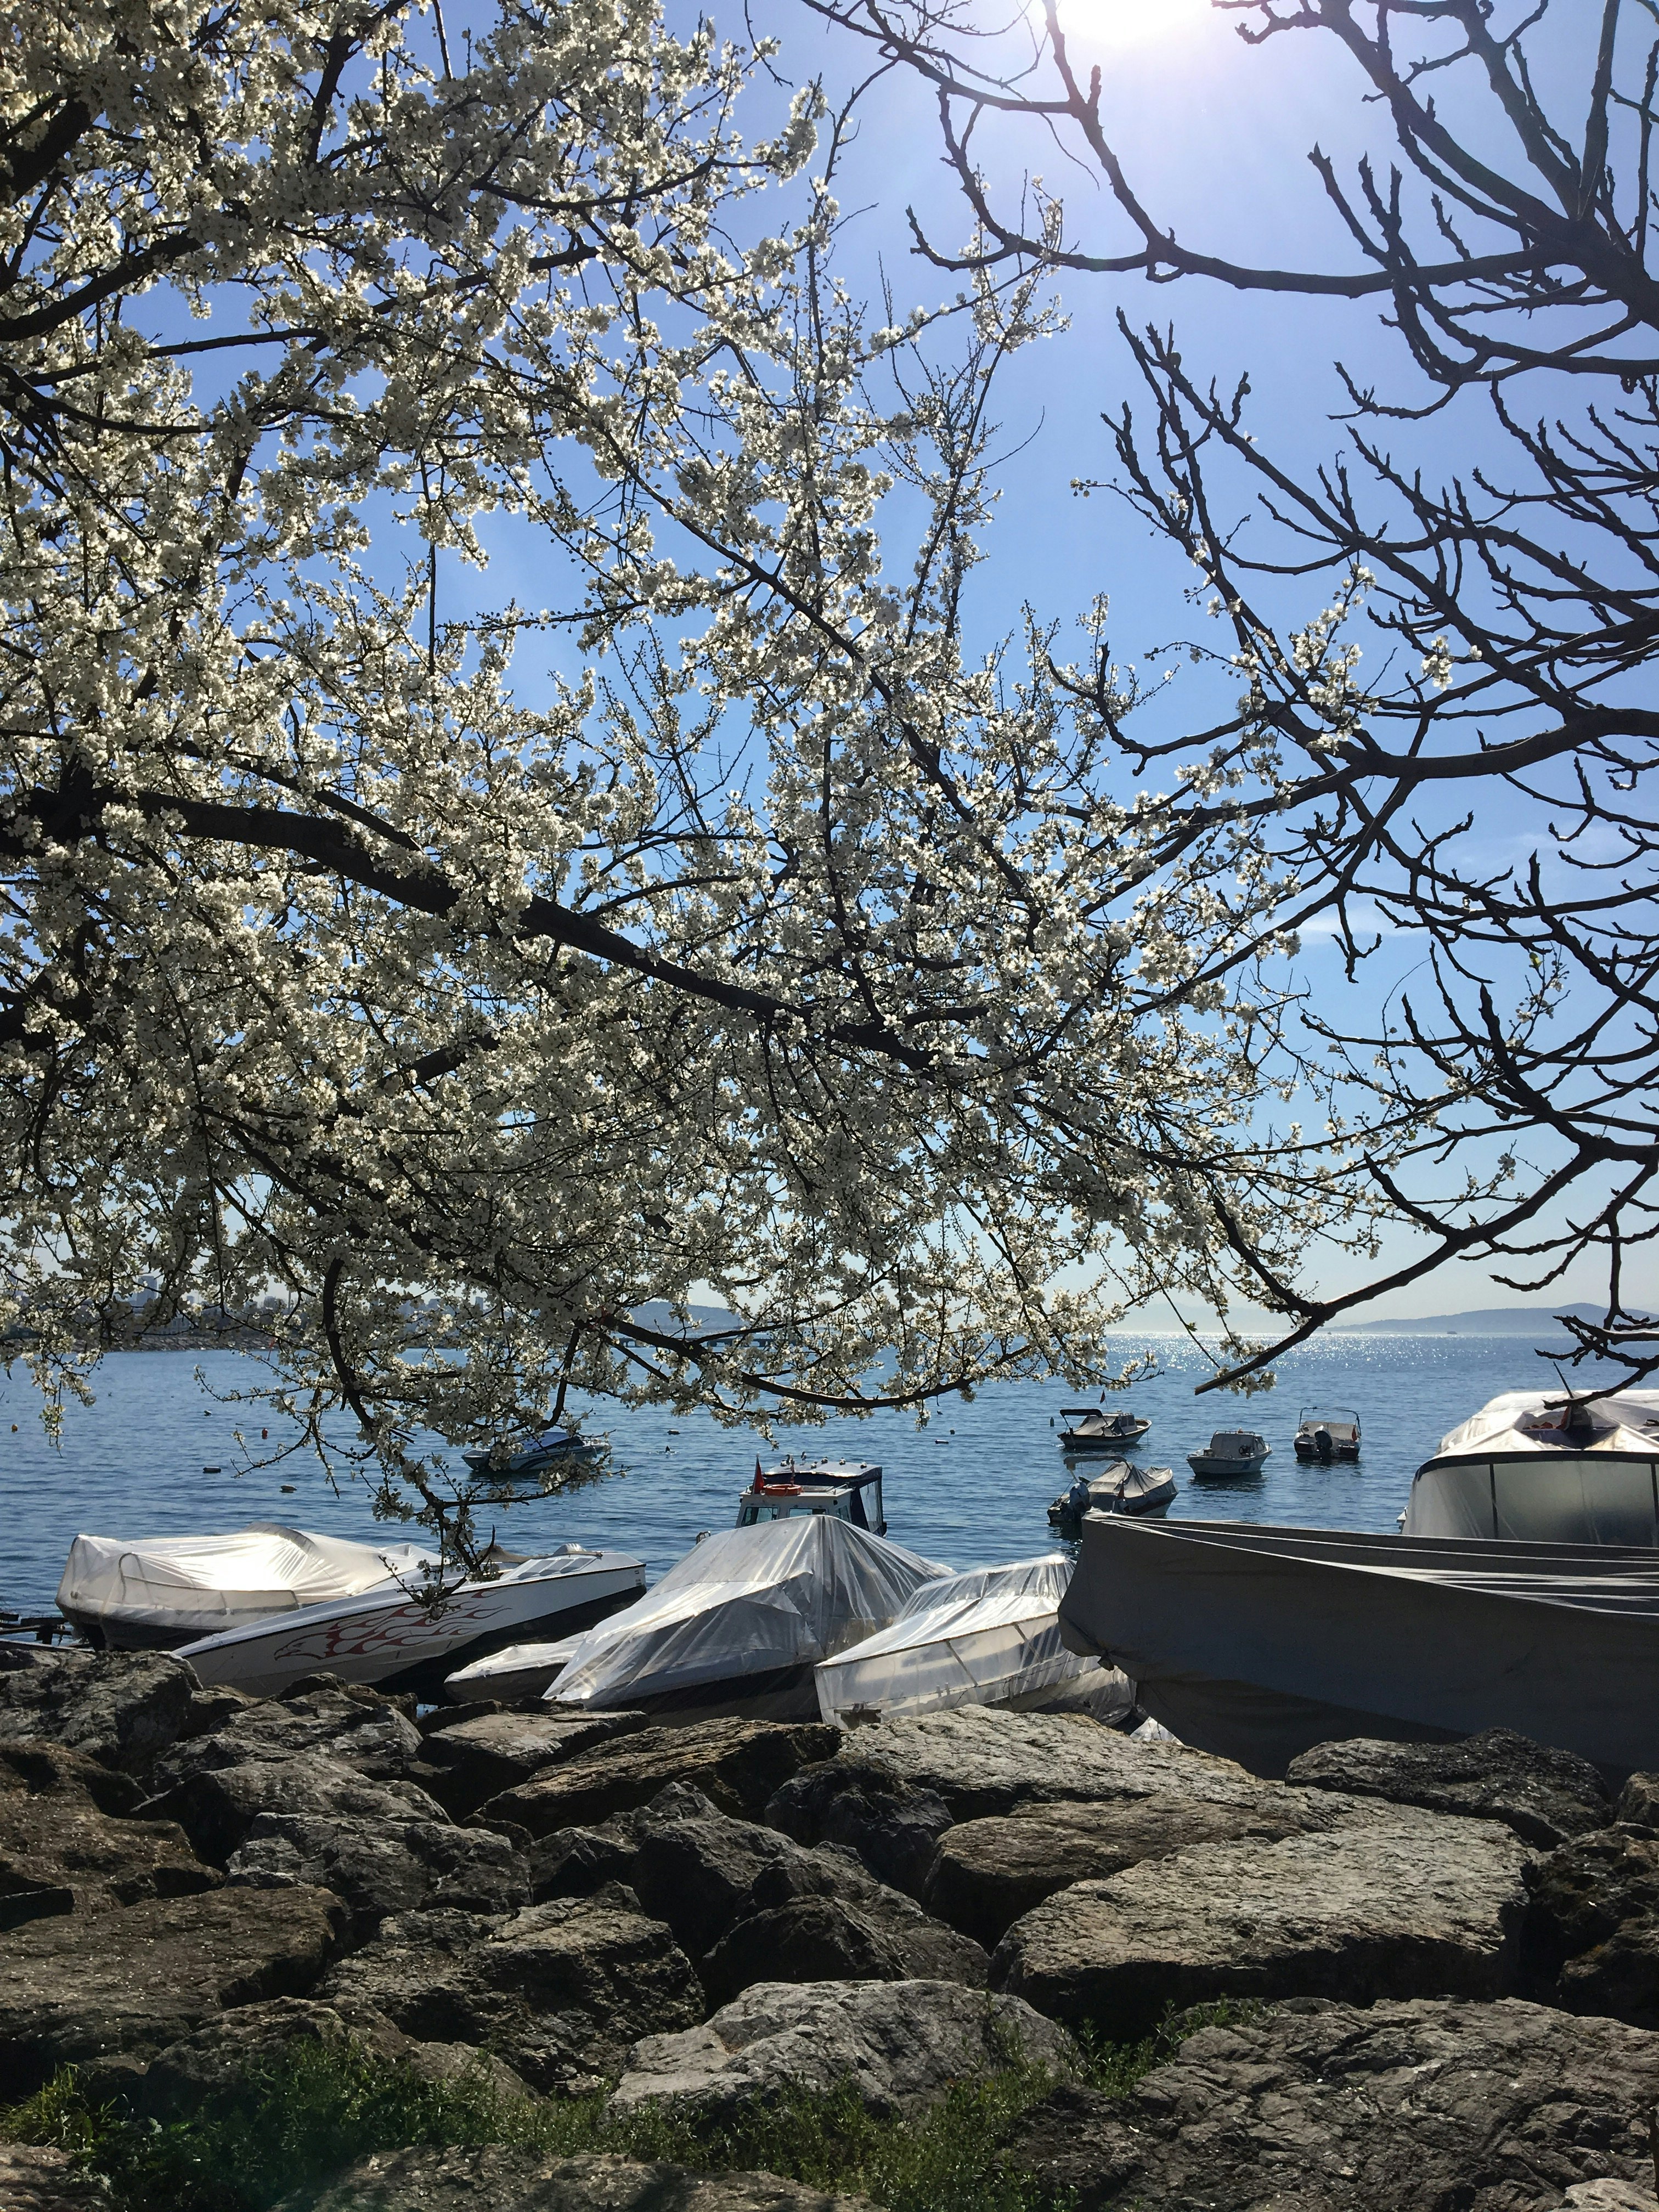 tree near boats on shore